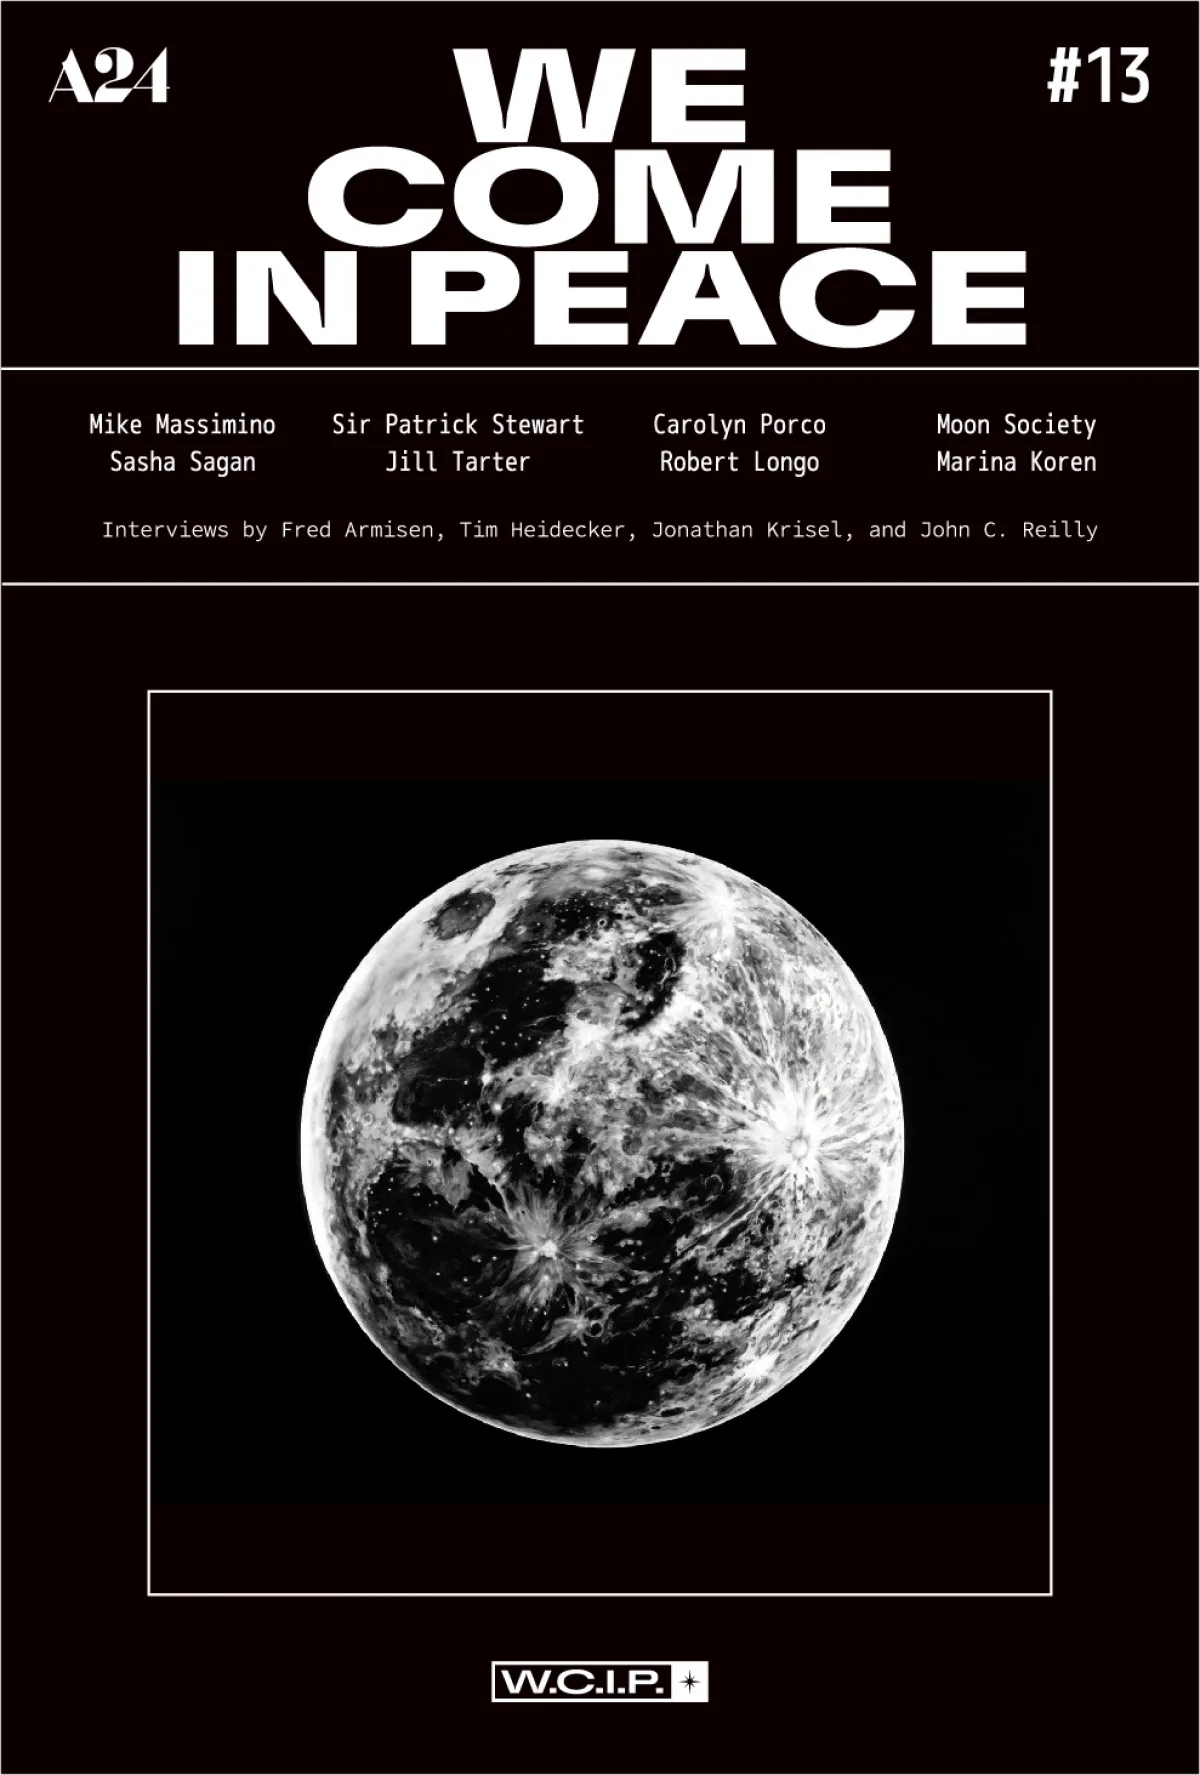 A24 Zine Moonbase8 Web Cover Thumbnail2